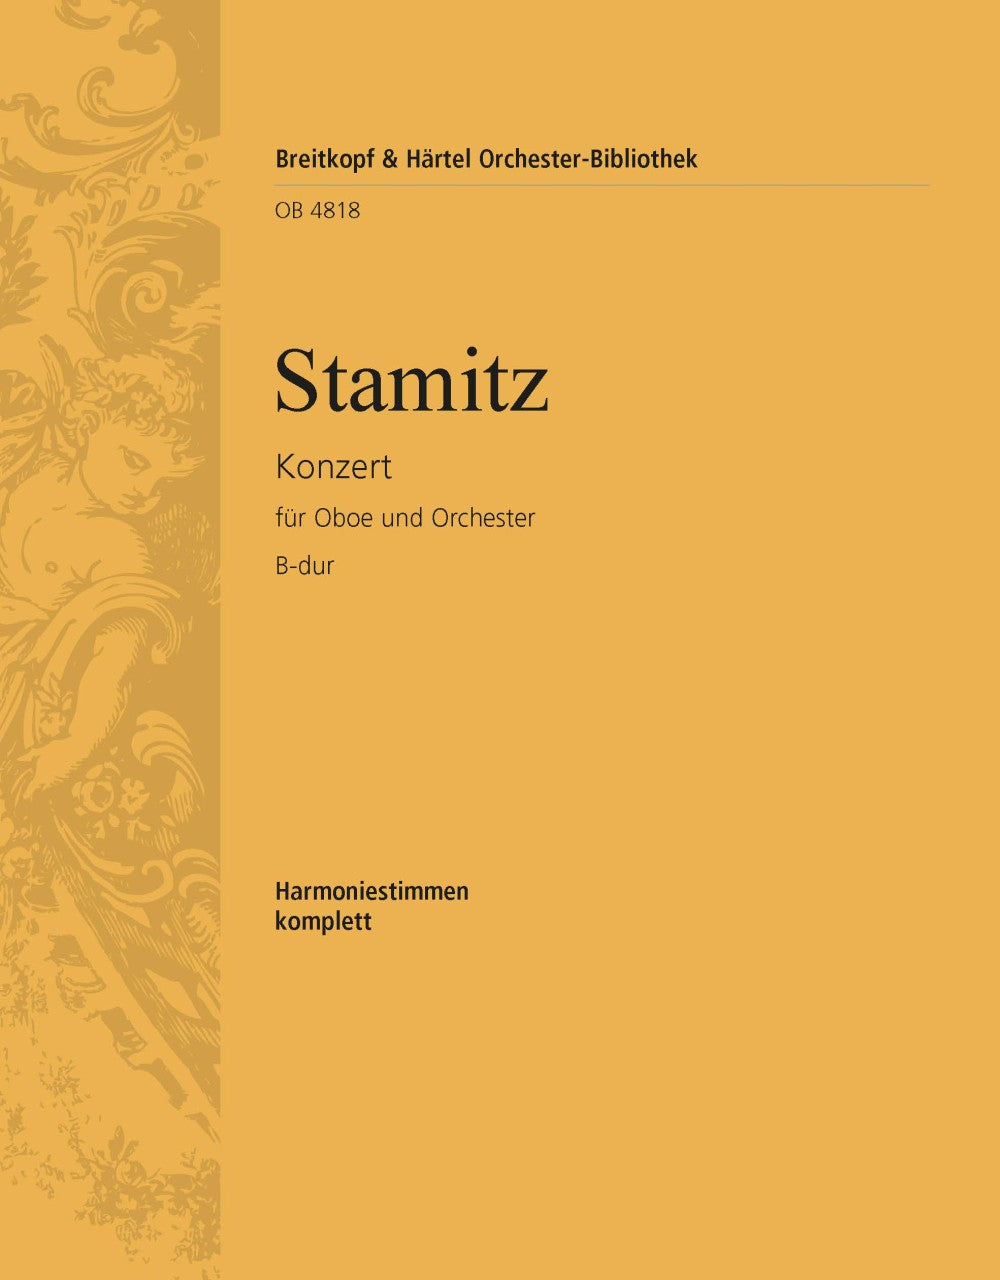 Stamitz: Oboe Concerto in B-flat Major